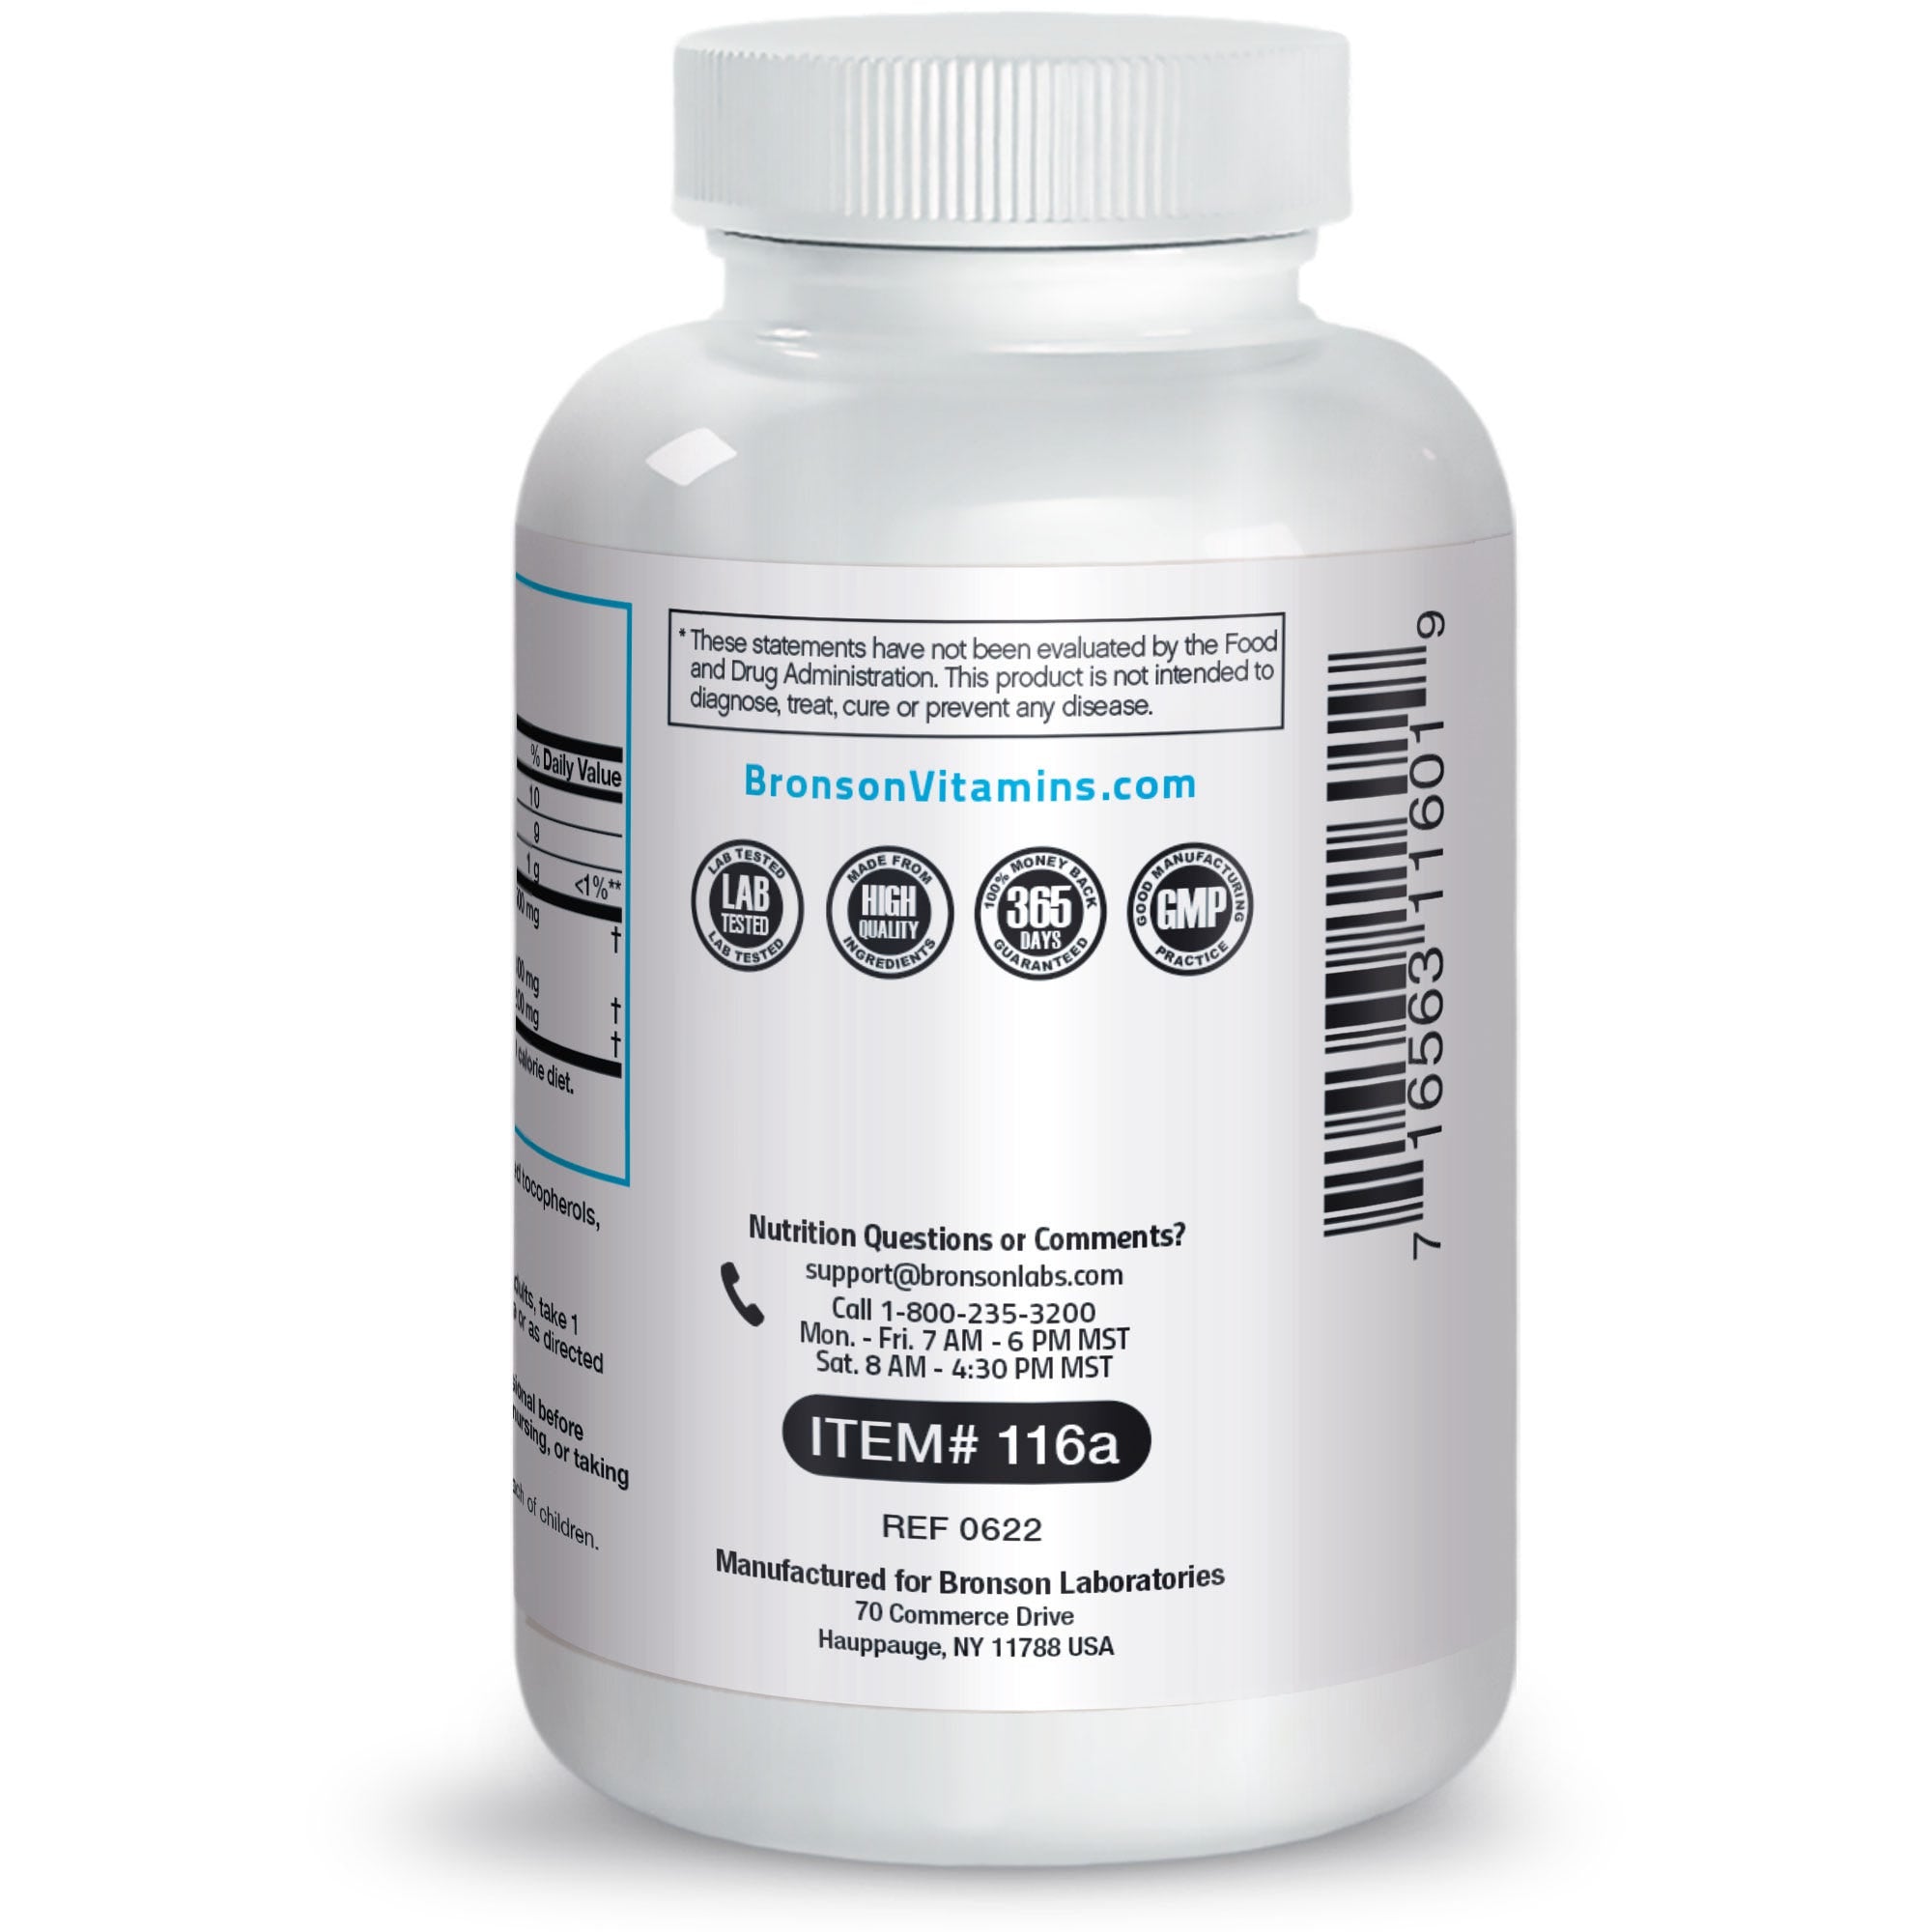 Super Omega-3 EPA DHA Fatty Acids - 500 mg view 3 of 4